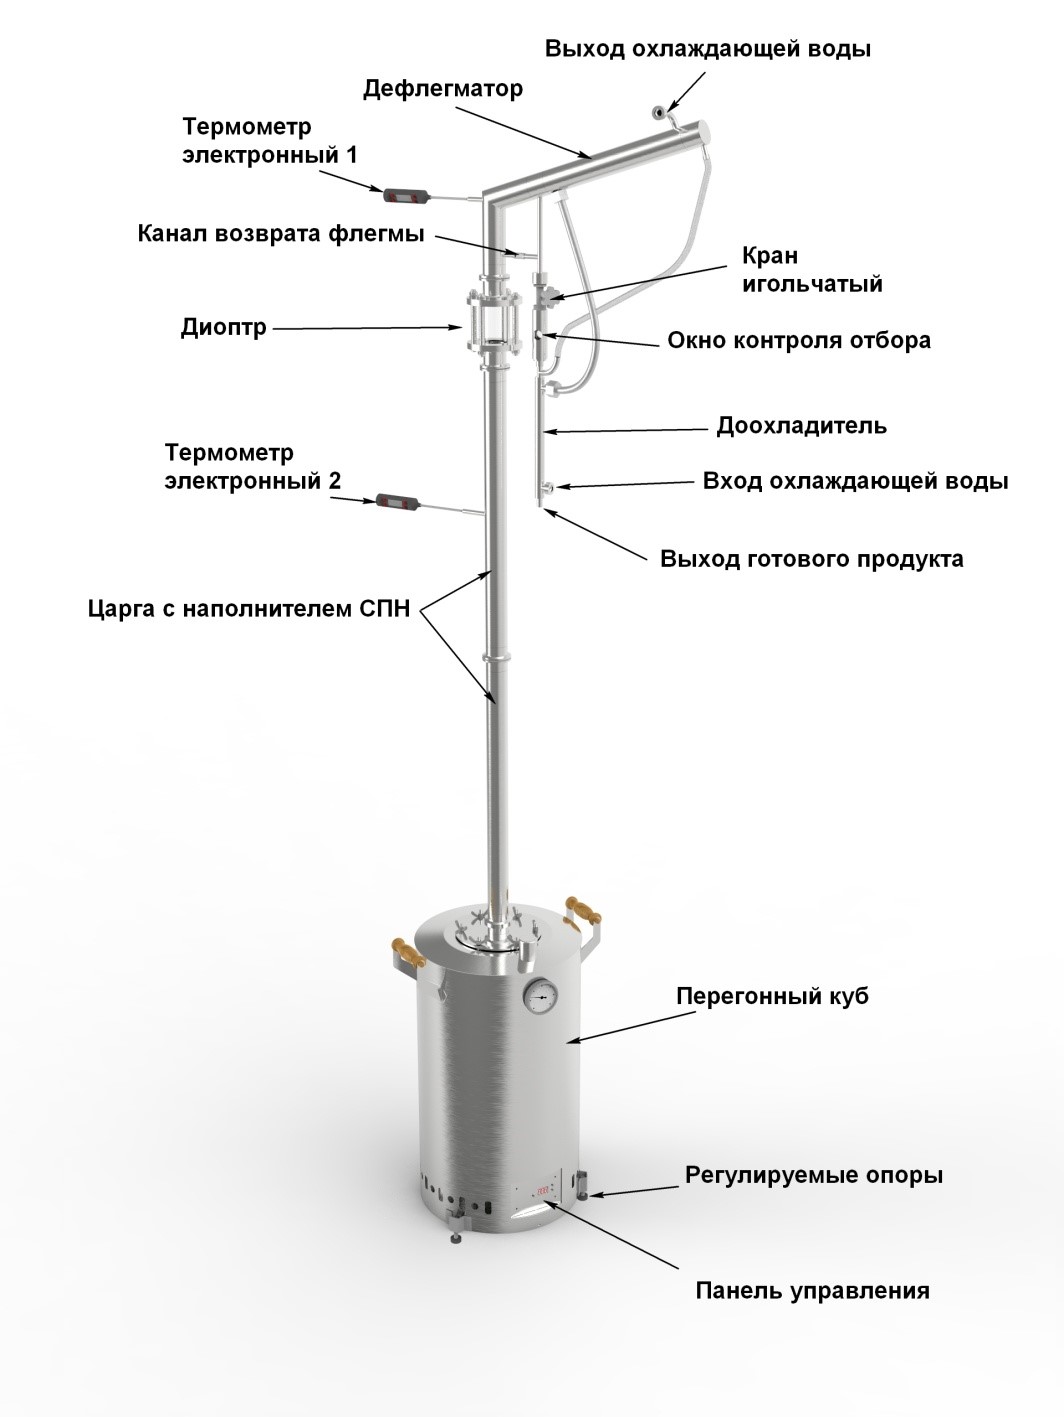 Устройство ректификационной колонны АЛКОВАР 38 (компьютерная модель)